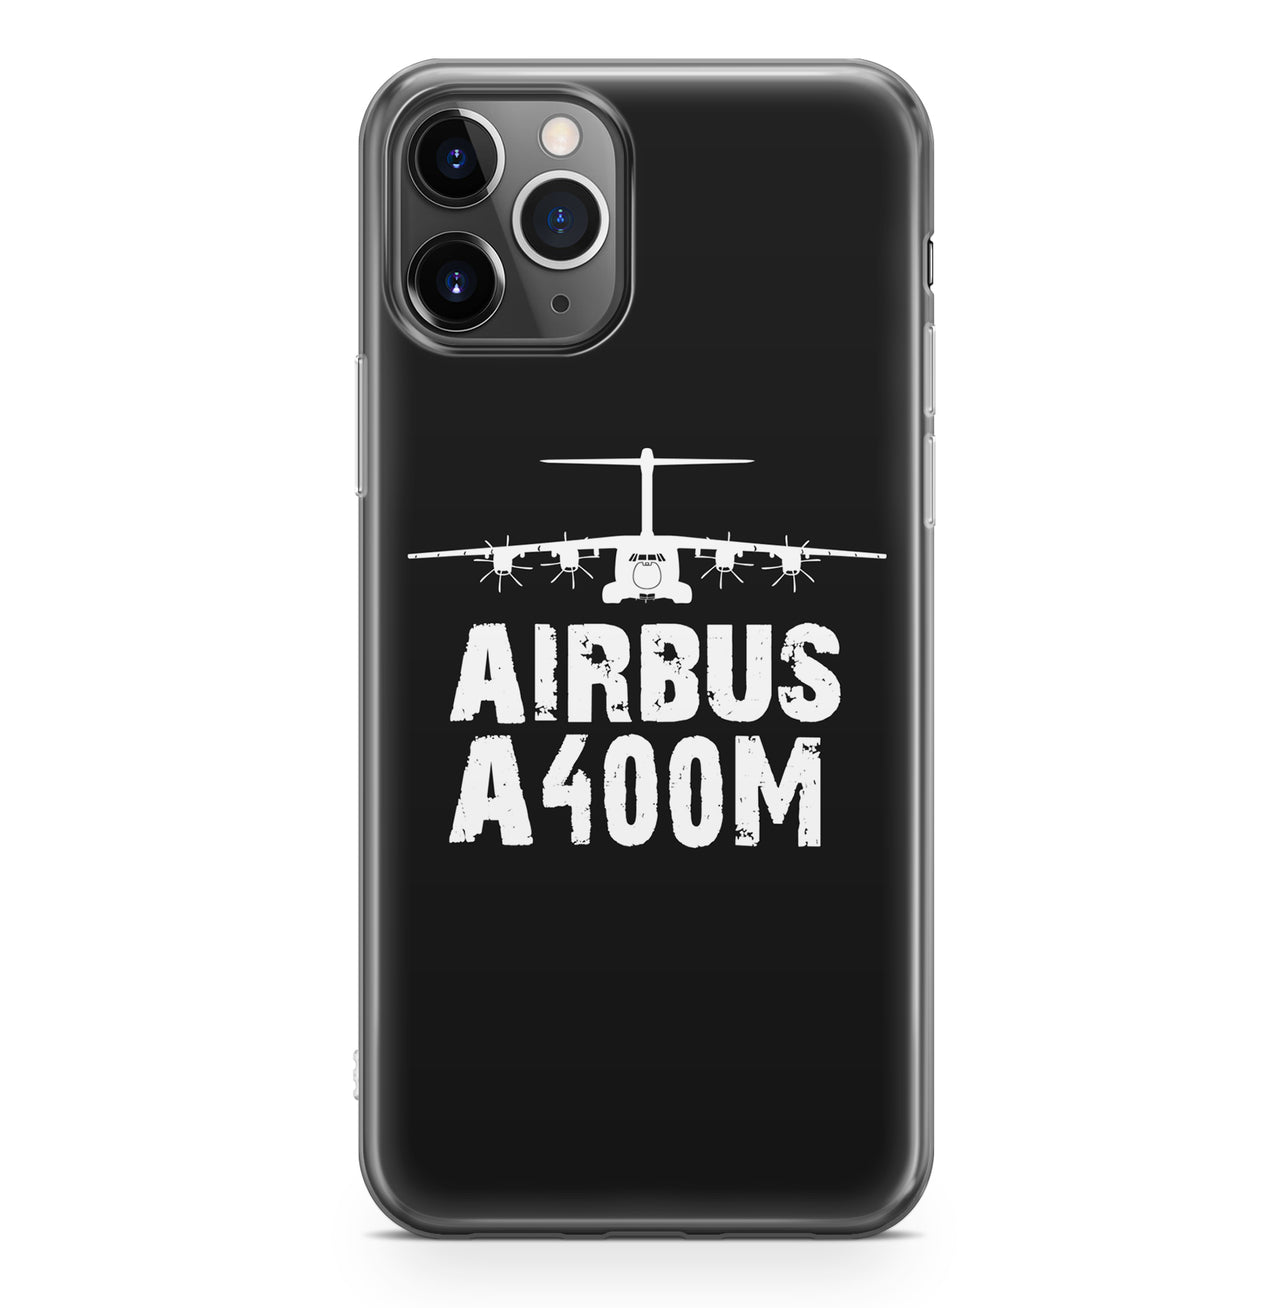 Airbus A400M & Plane Designed iPhone Cases